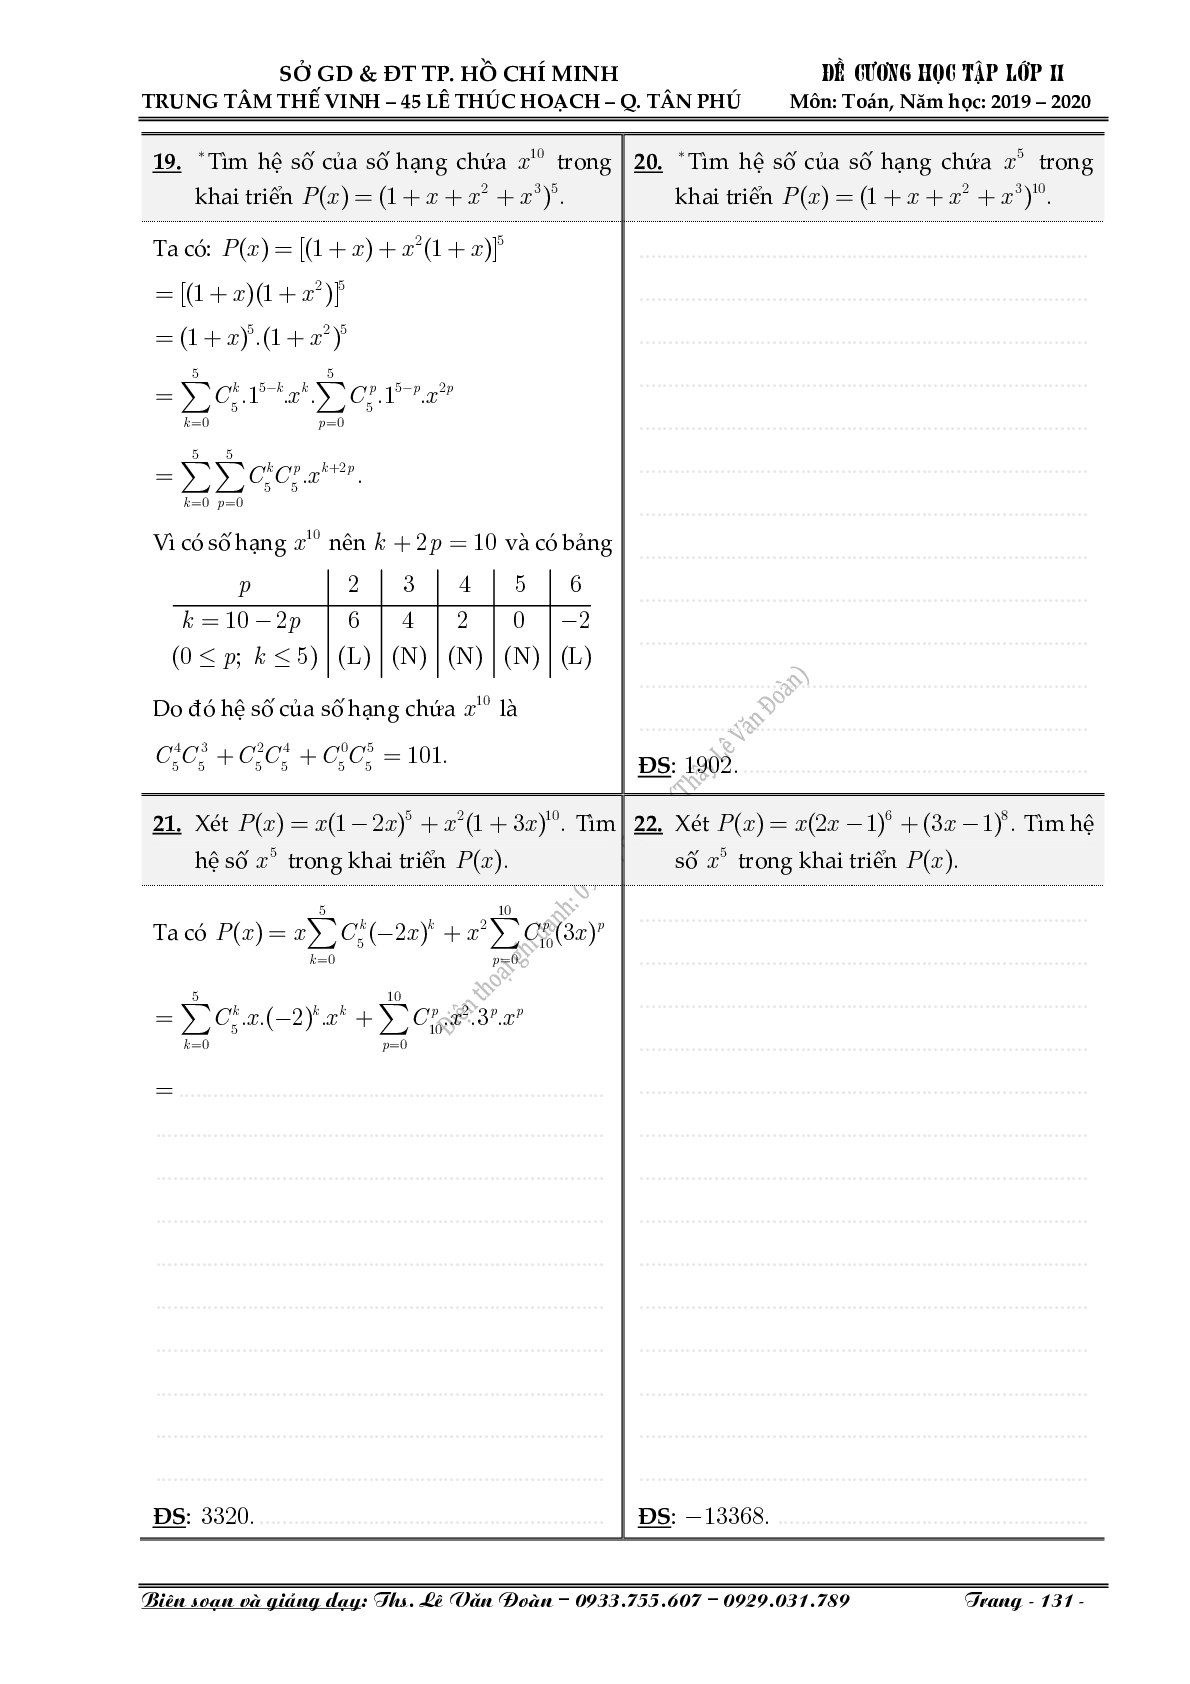 Chuyên đề nhị thức Newton (Niu-tơn) (trang 5)